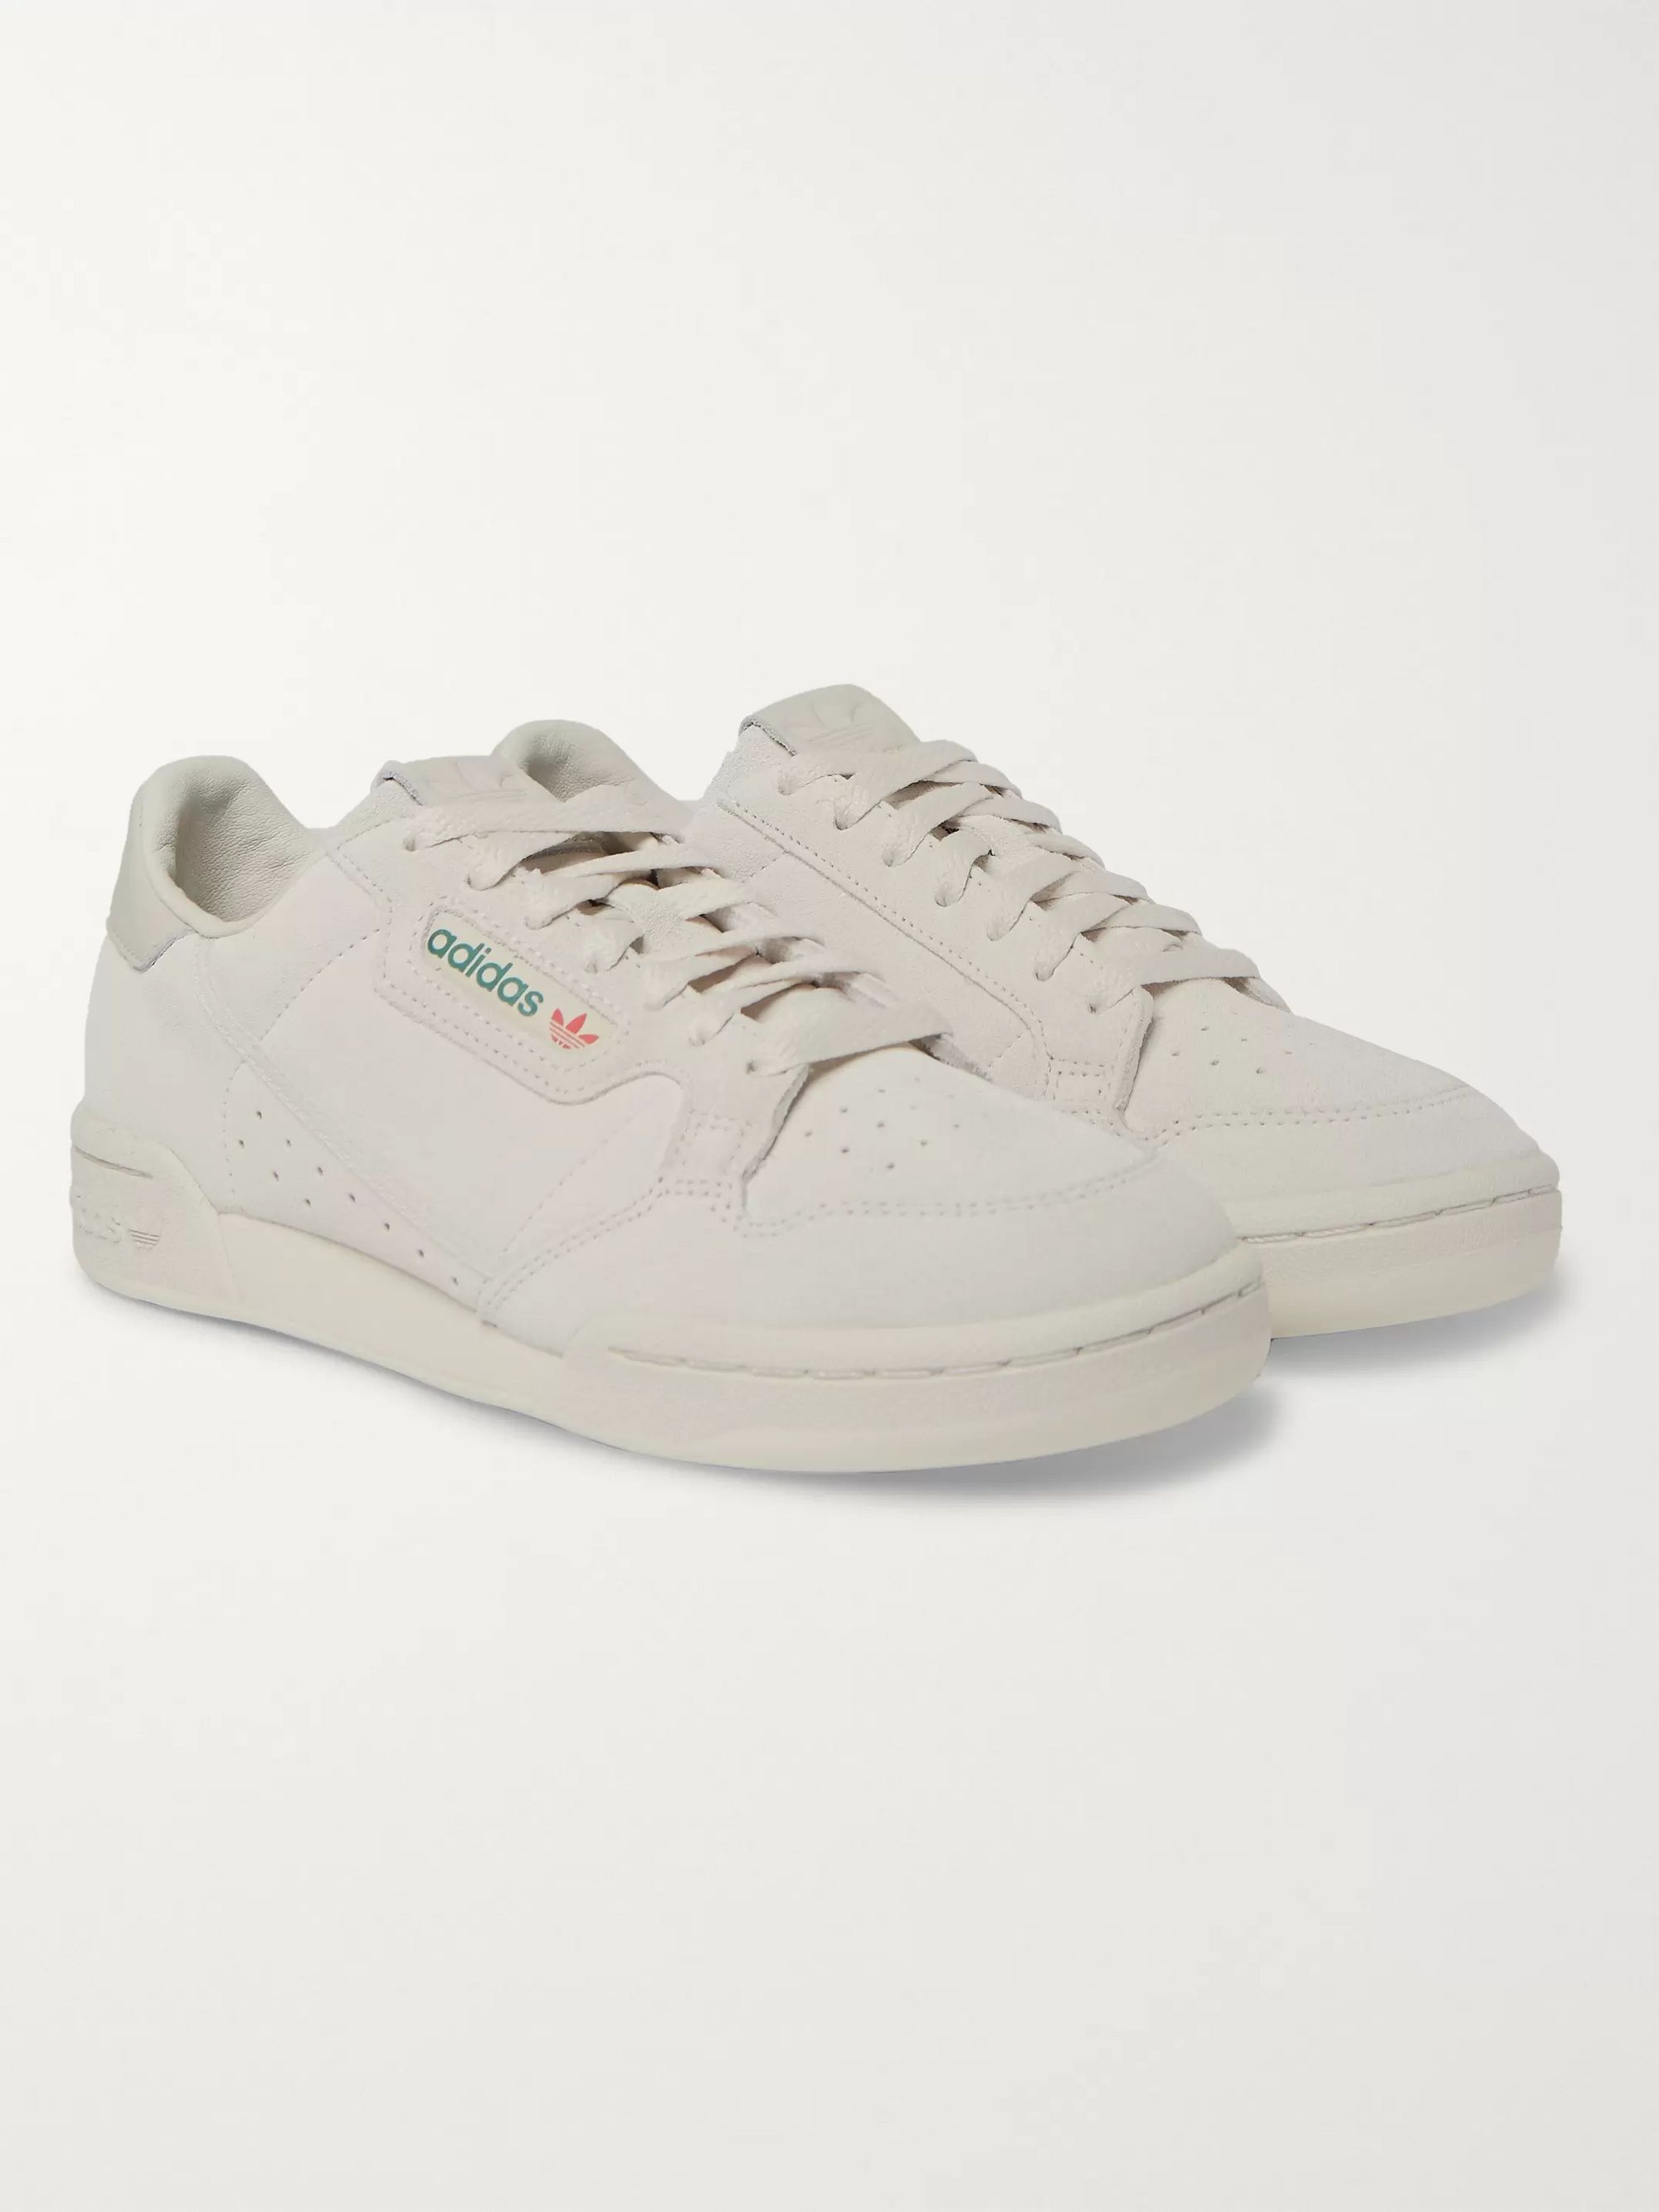 Gray Continental 80 Suede Sneakers | adidas Originals | MR PORTER